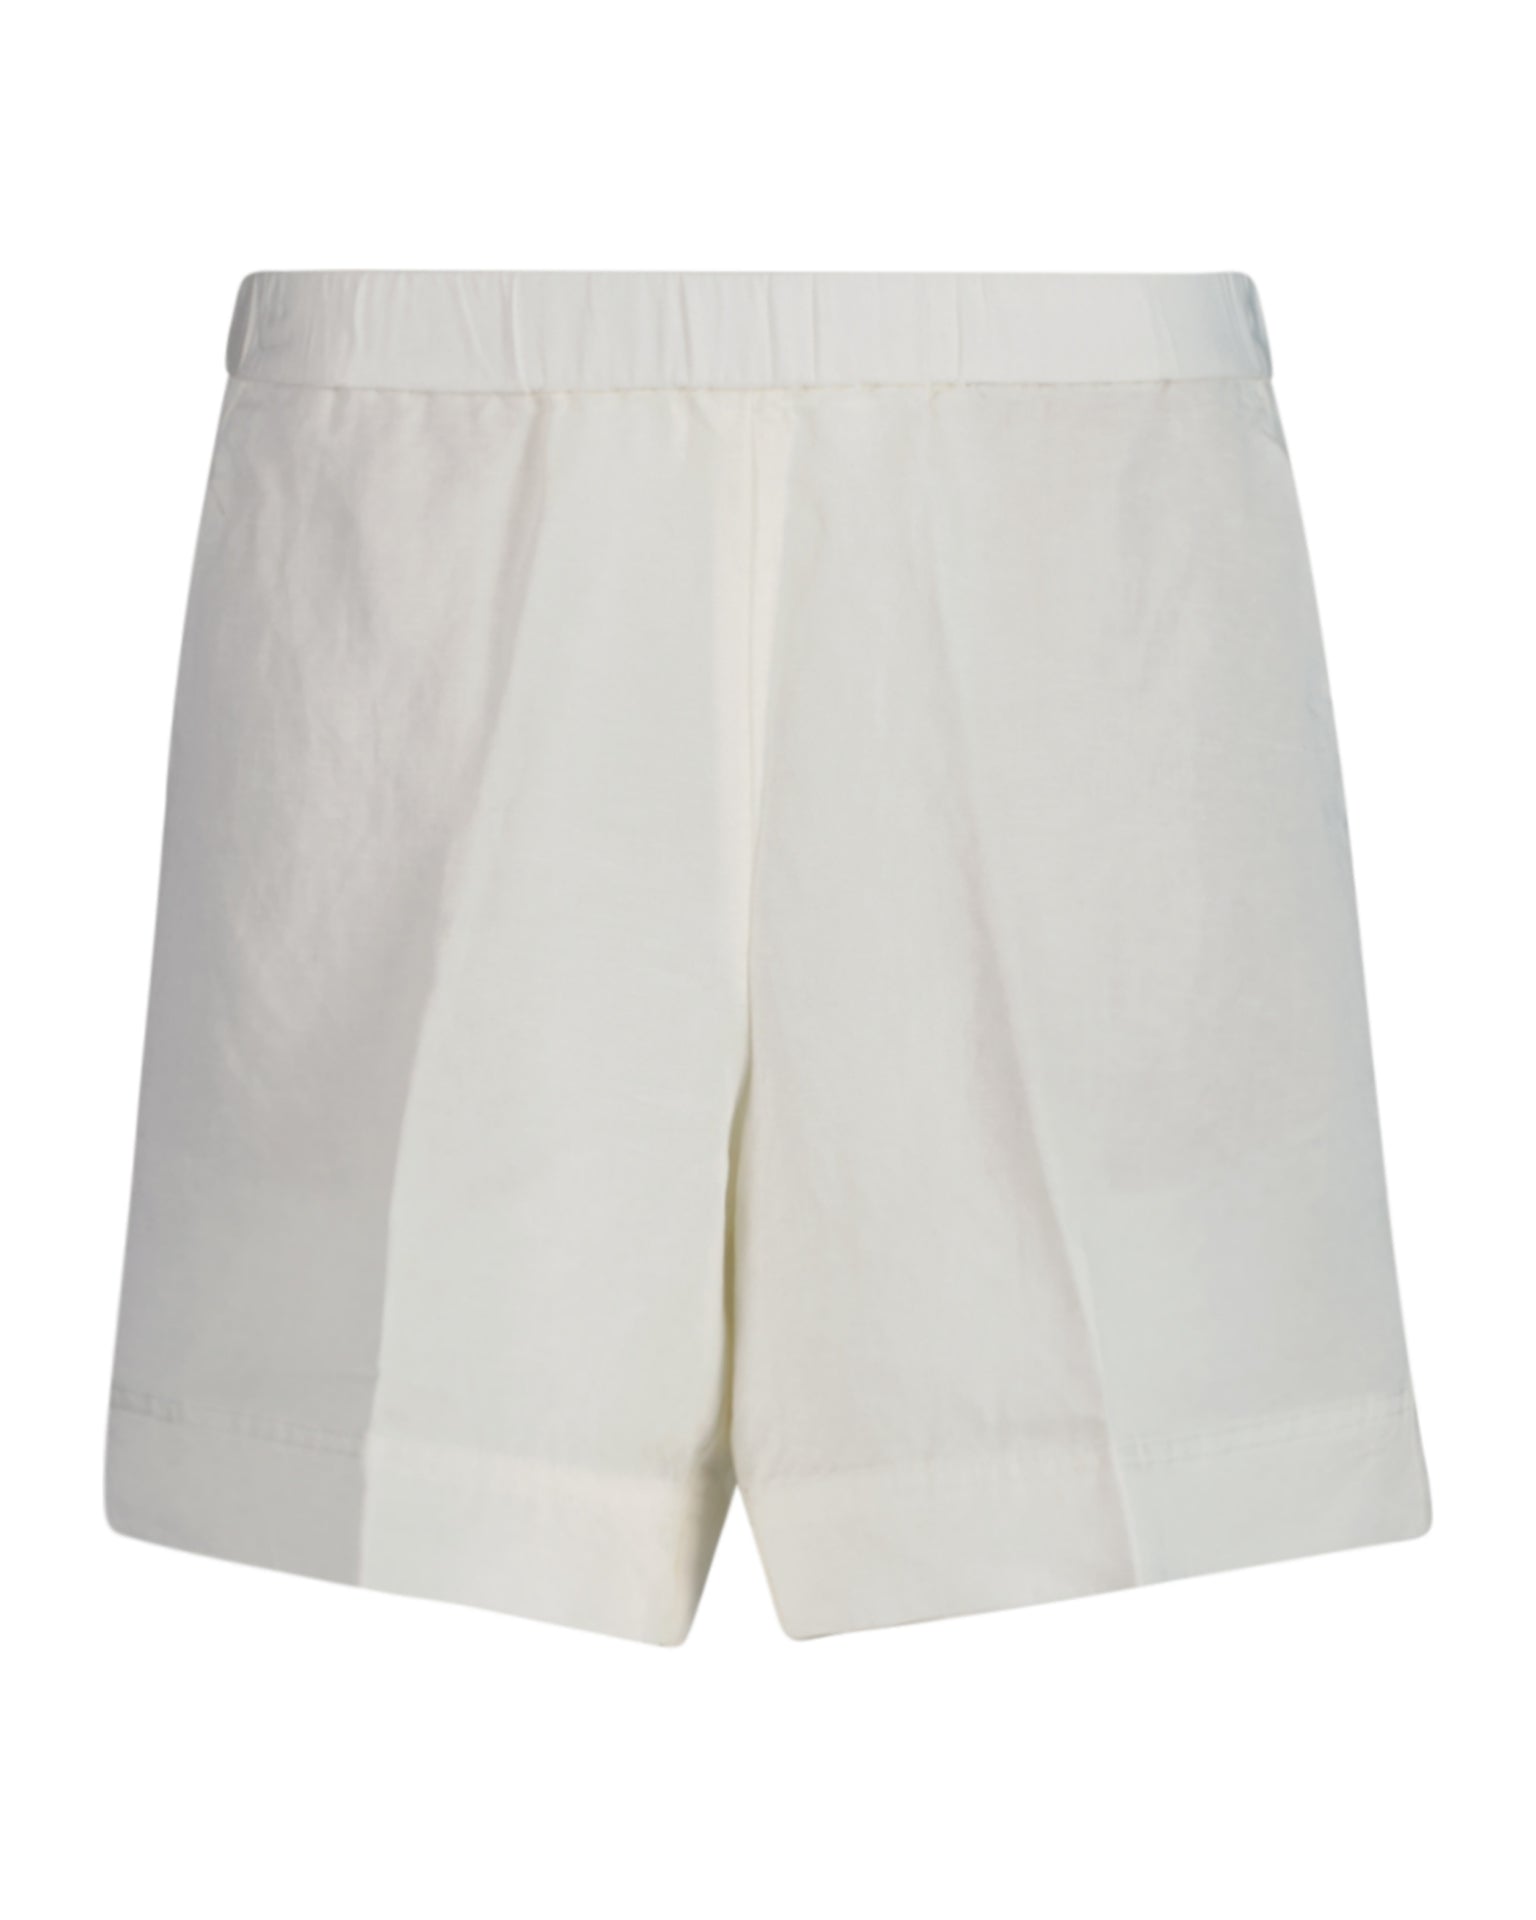 Rel Linen Blend Pull On Shorts - Eggshell